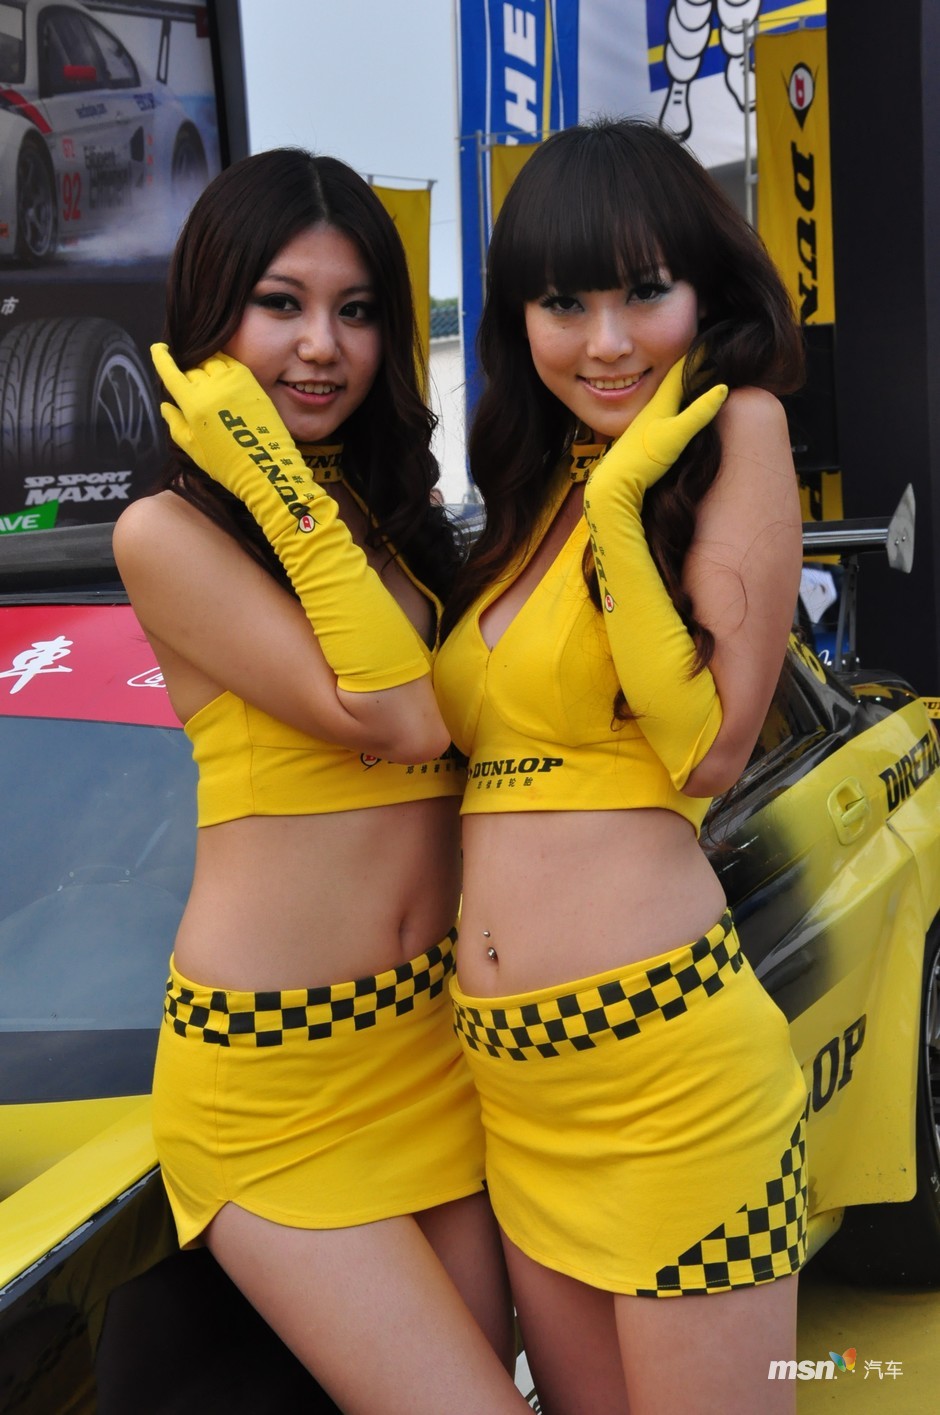 世界3大自動車イベントのル・マン24時間レースが11月7日、初めて中国で開かれ、選手らは珠海のサーキット場で激しい戦いを繰り広げた。サーキット場ではレースのほか、会場を盛り上げたレースクイーンがメディアの注目を集めた。